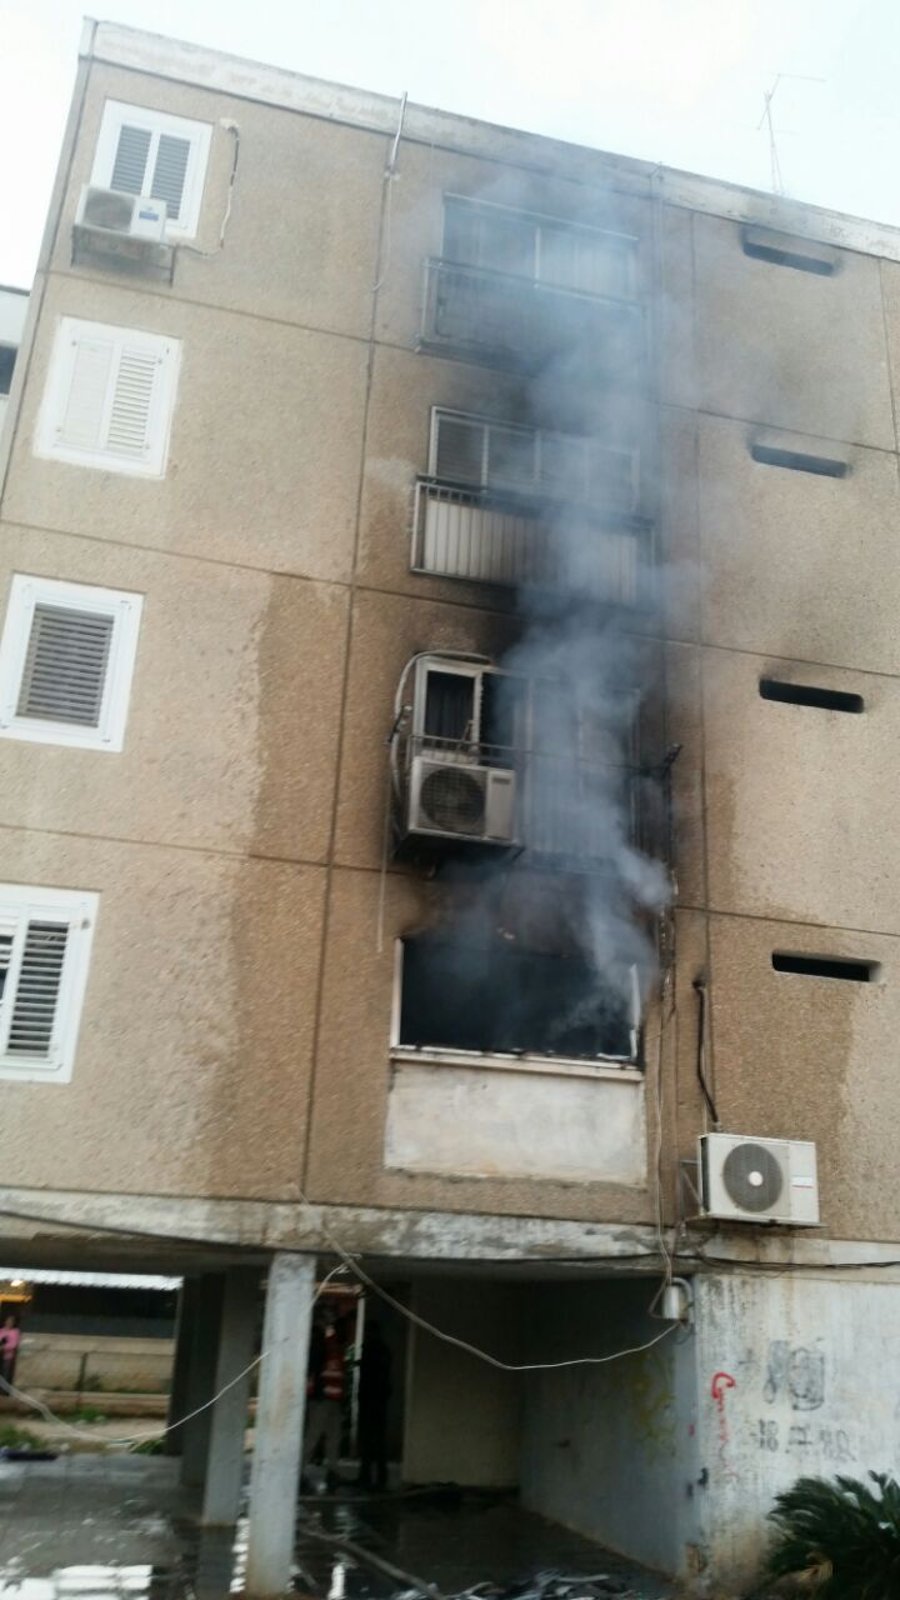 שריפה פרצה בבניין בדימונה: 21 נפצעו